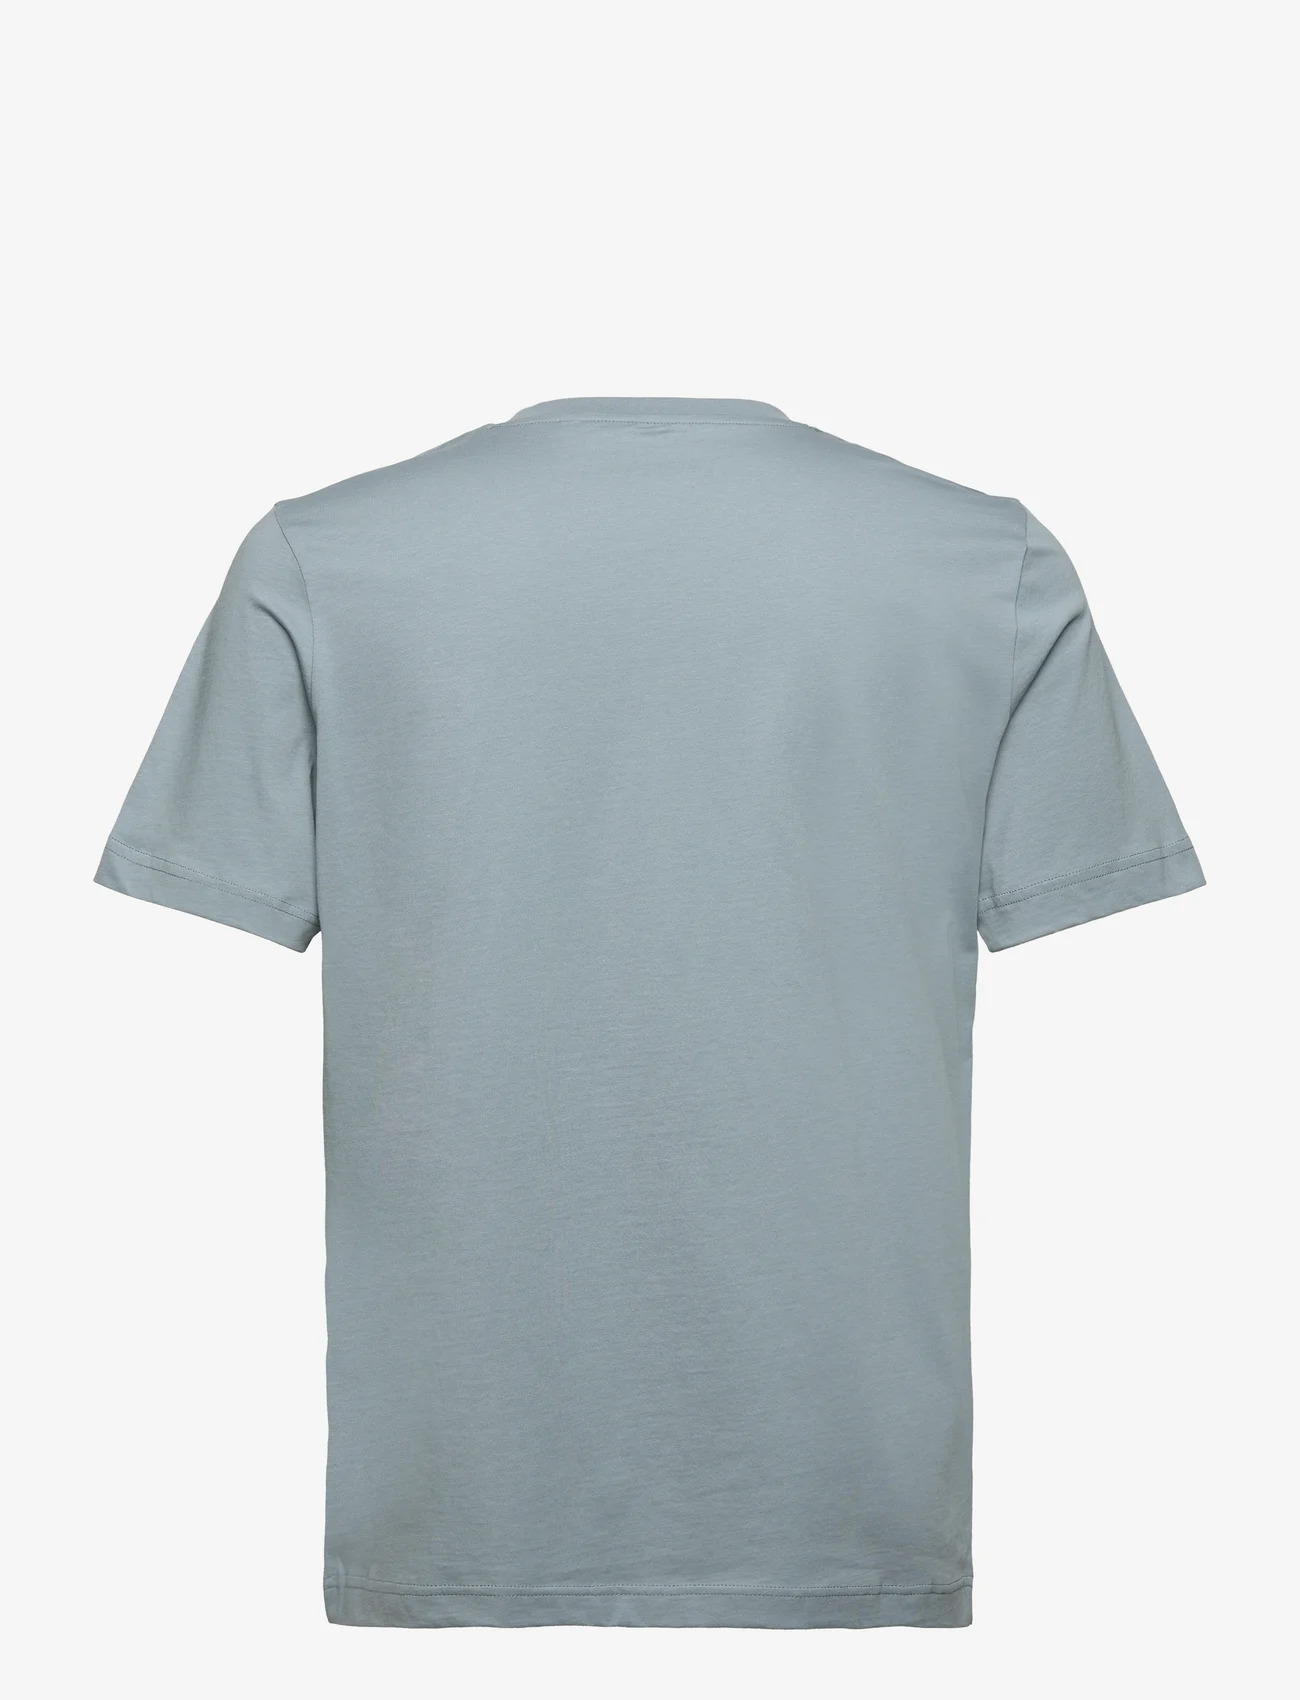 Tom Tailor - printed t-shirt - lägsta priserna - grey mint - 1